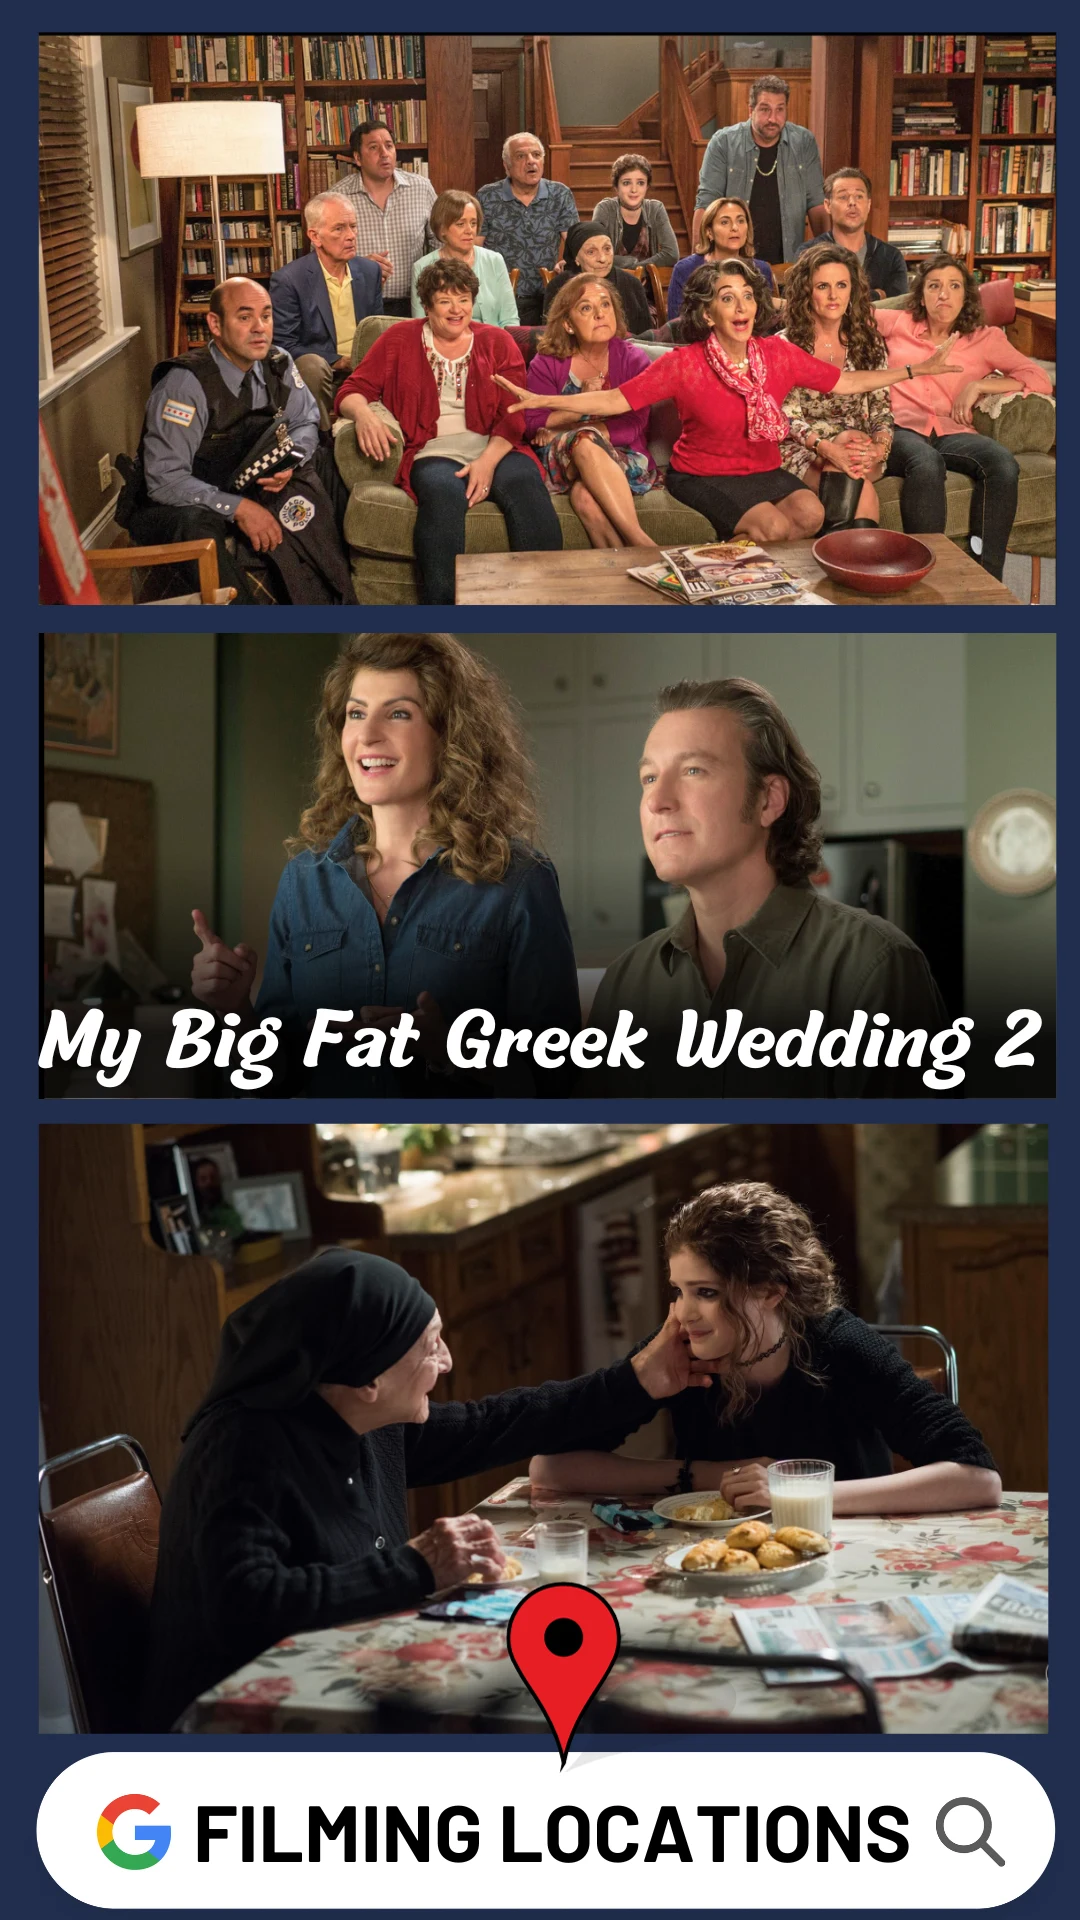 My Big Fat Greek Wedding 2 Filming Locations